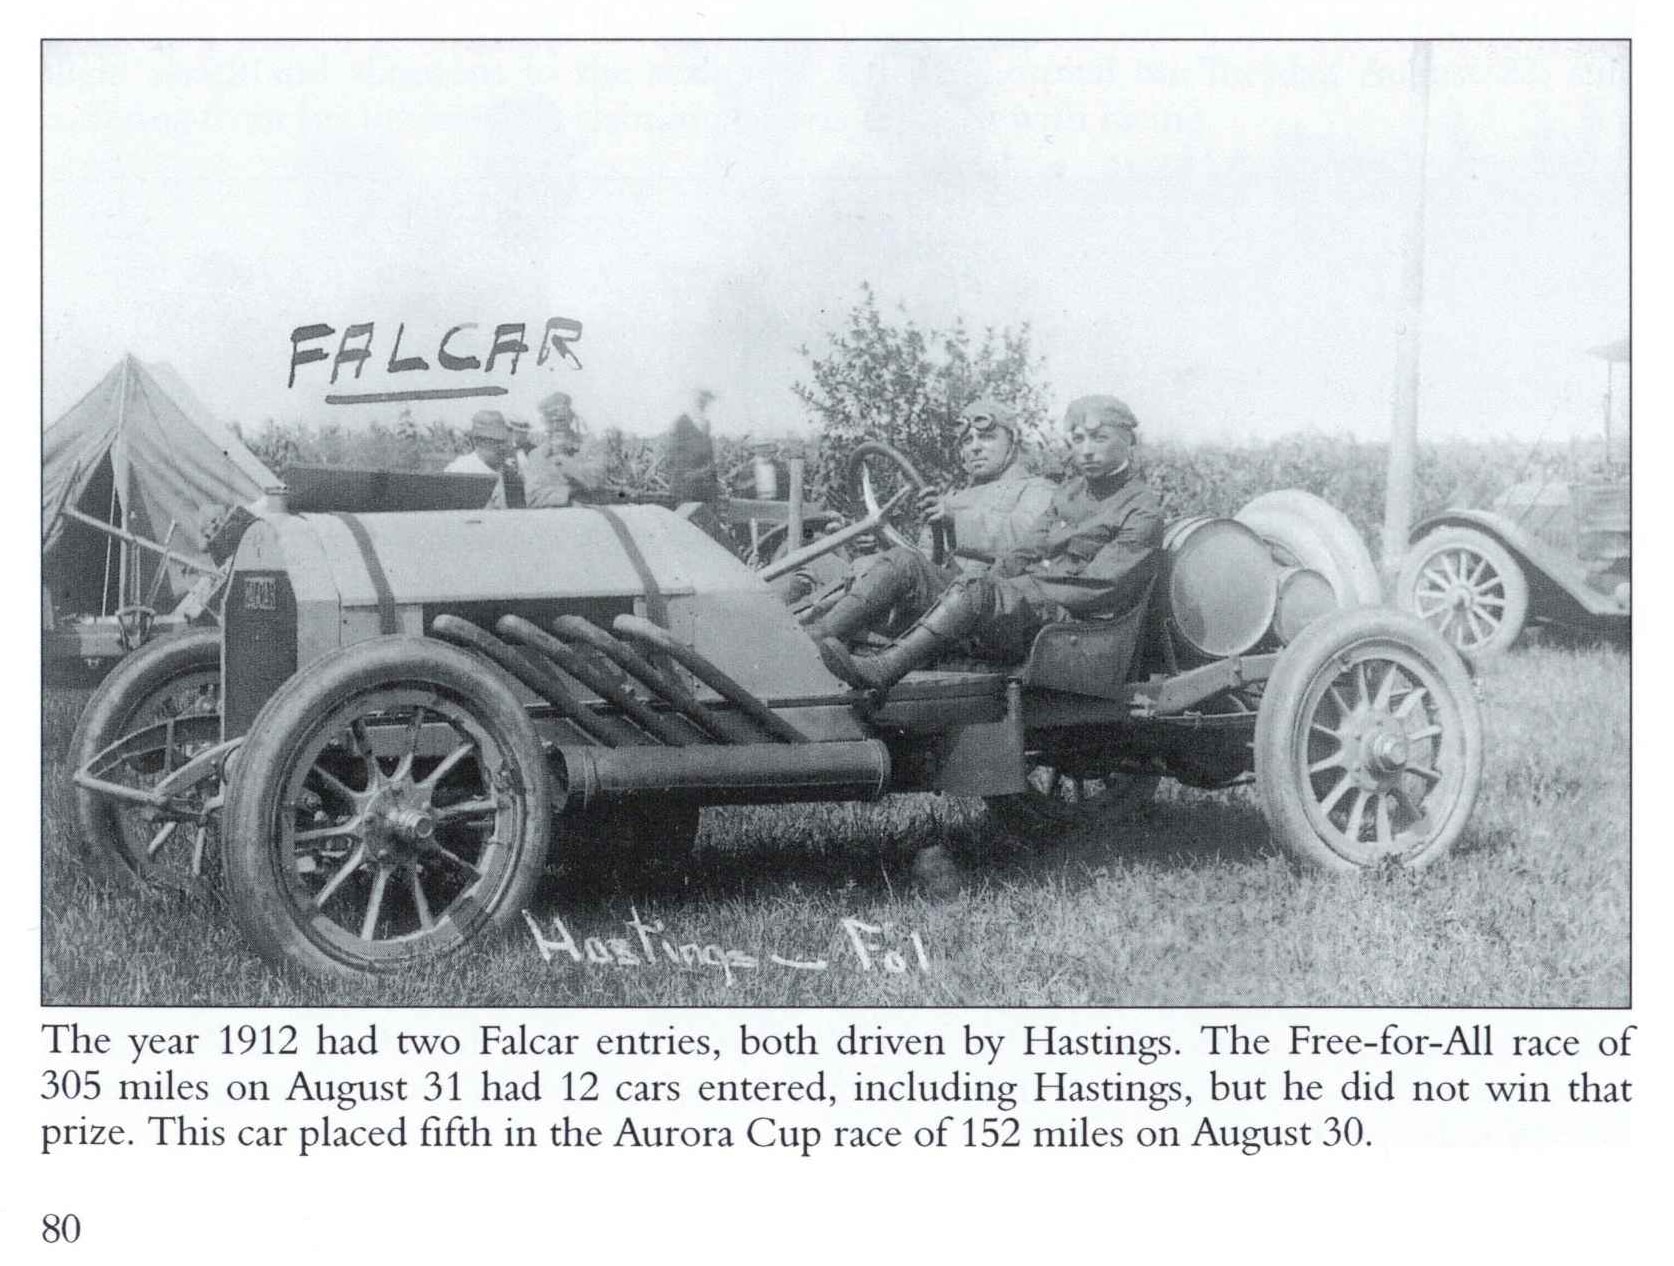 1912 8 FALCAR Hastings Elgin National Road Races POSTCARD HISTORY ...